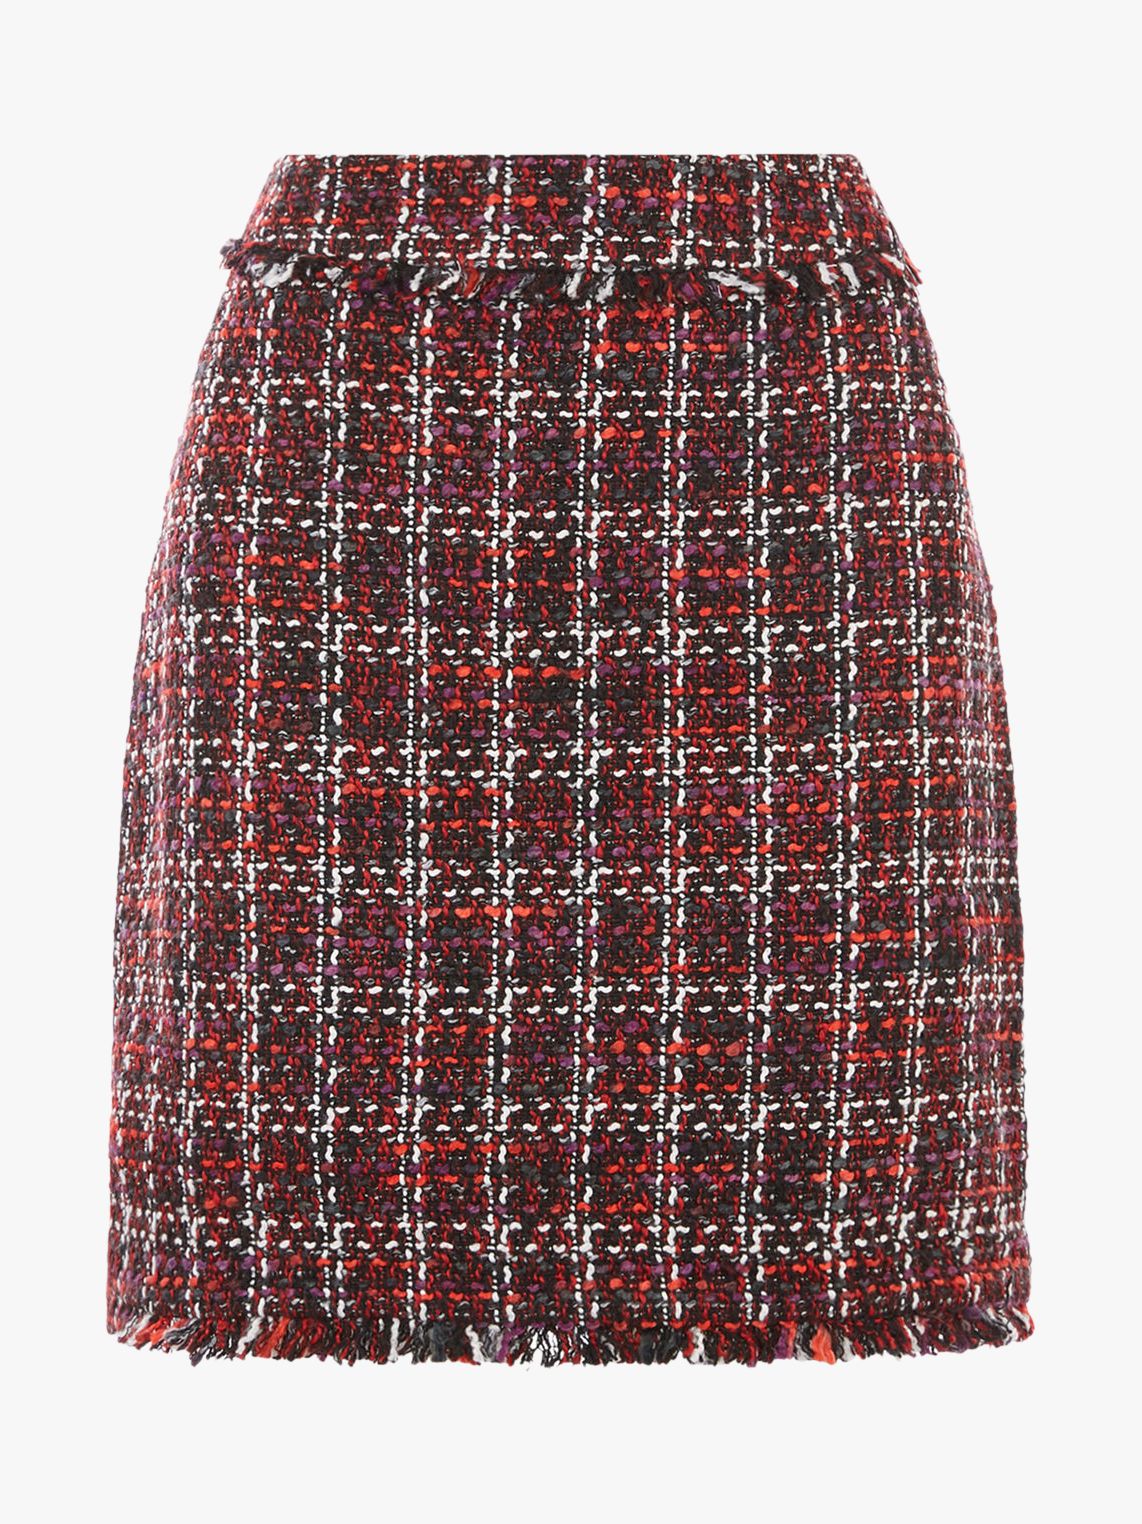 Warehouse Ruby Tweed Pelmet Skirt, Red/Multi